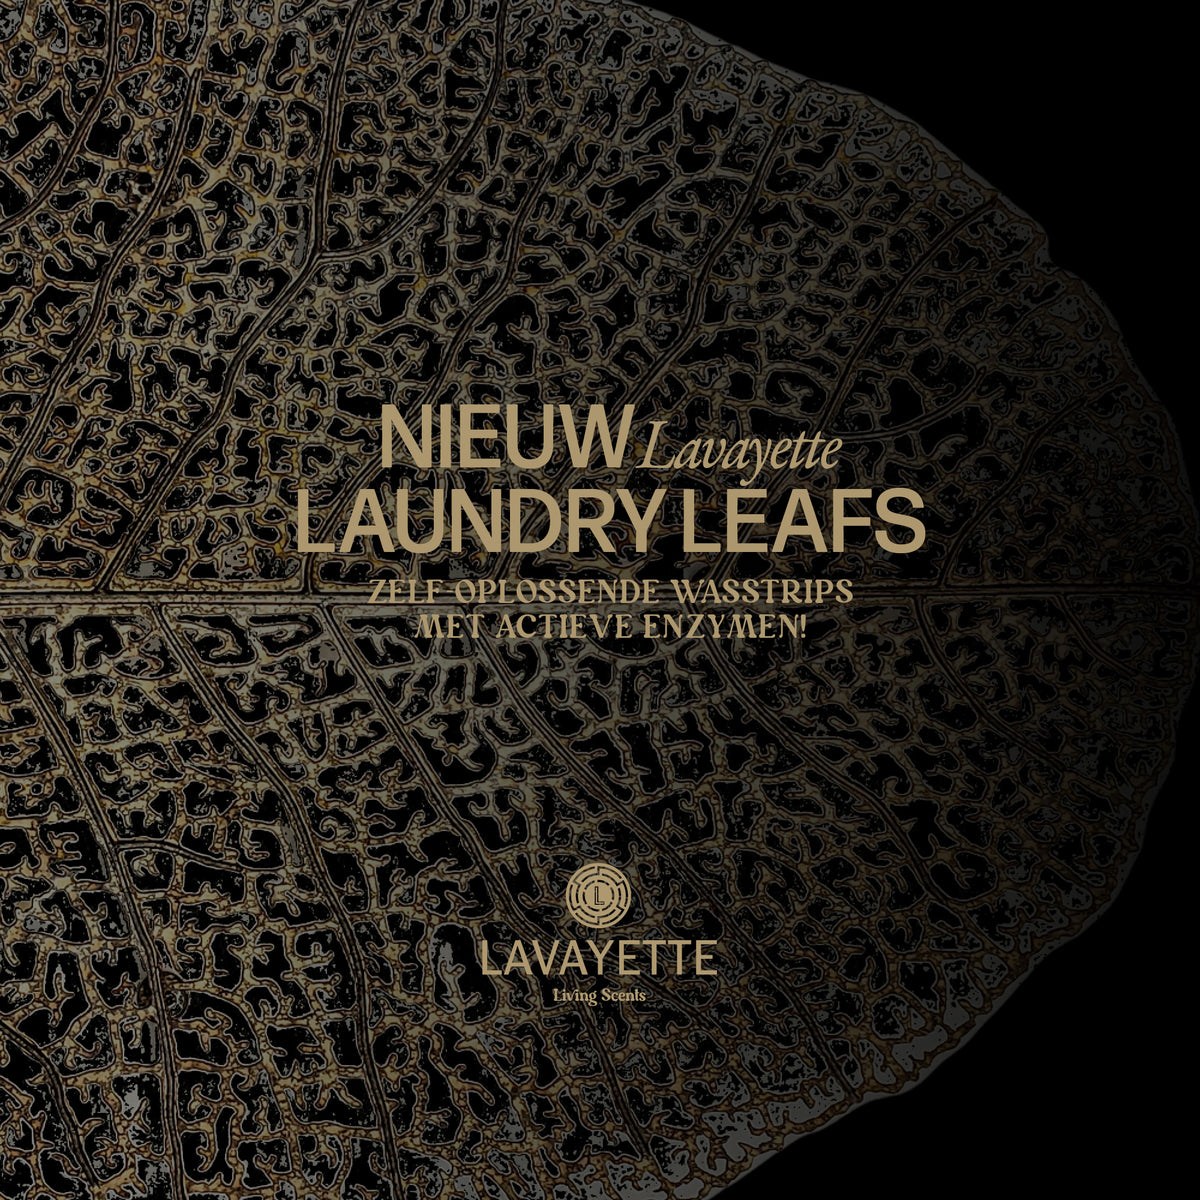 Lavayette Laundry Leafs - wasstrips 50st. - 100 wasbeurten - Lavayette